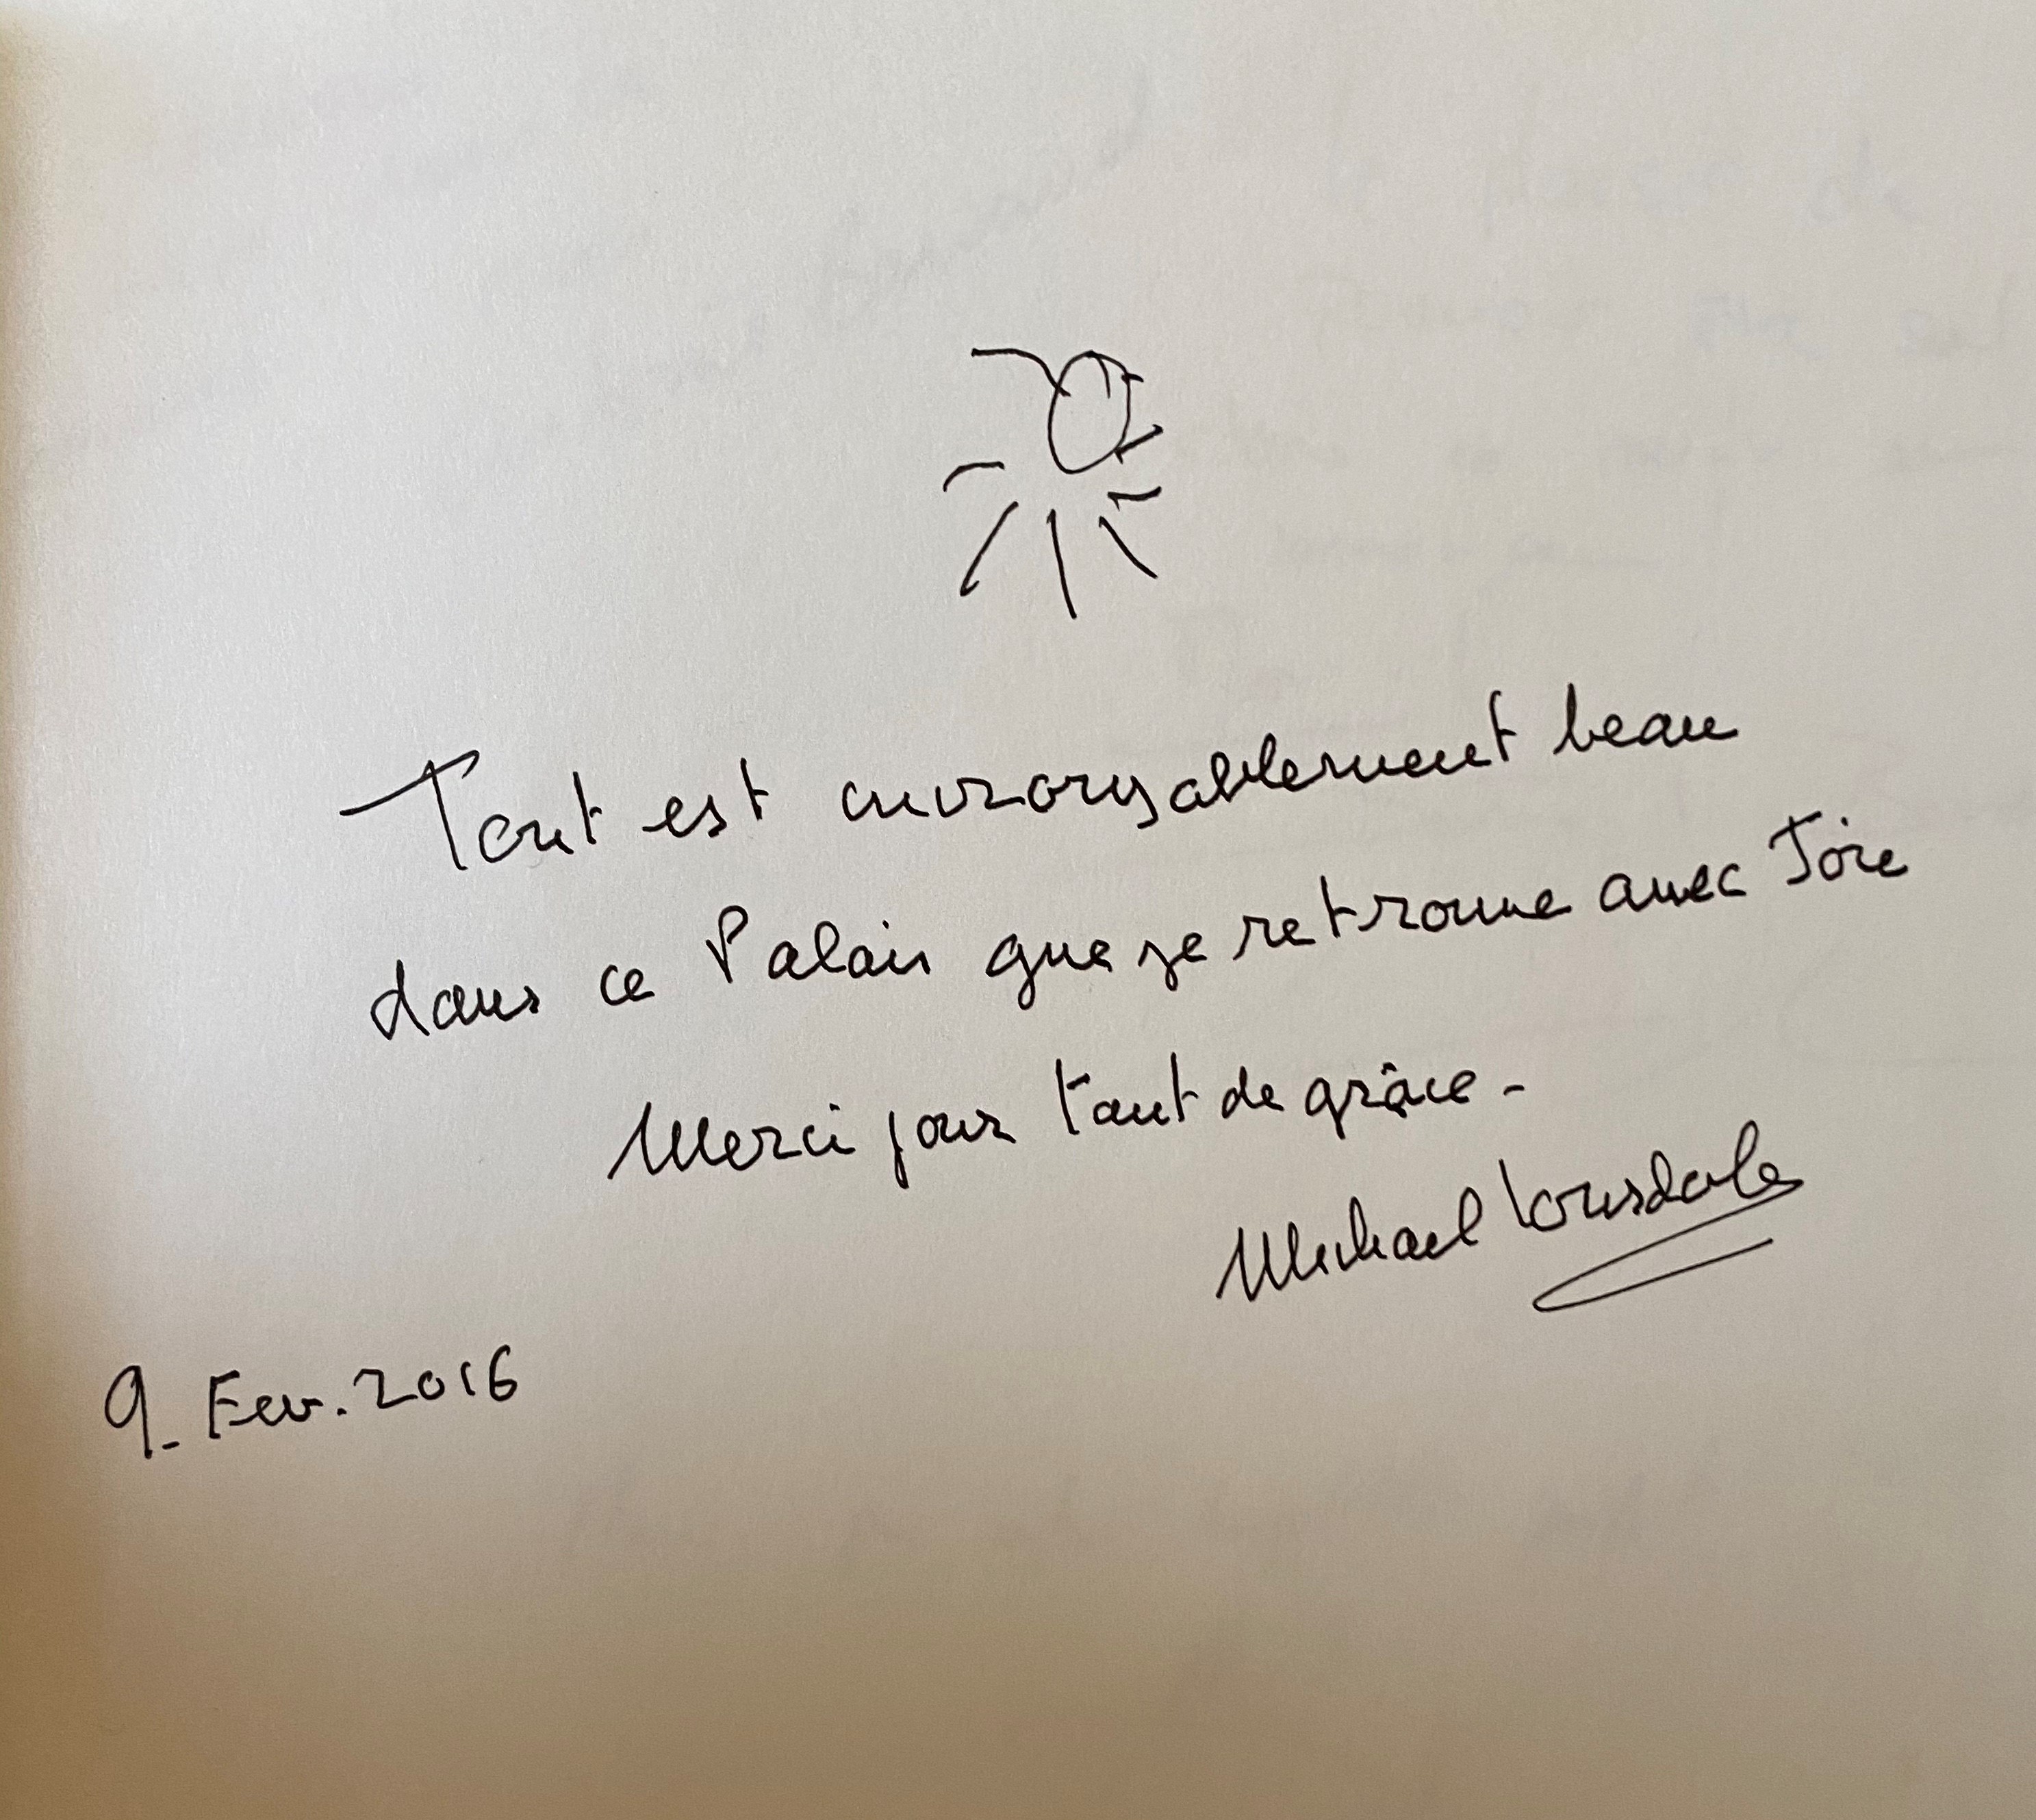 Photographie du message de Michael Lonsdale dans le livre d'or